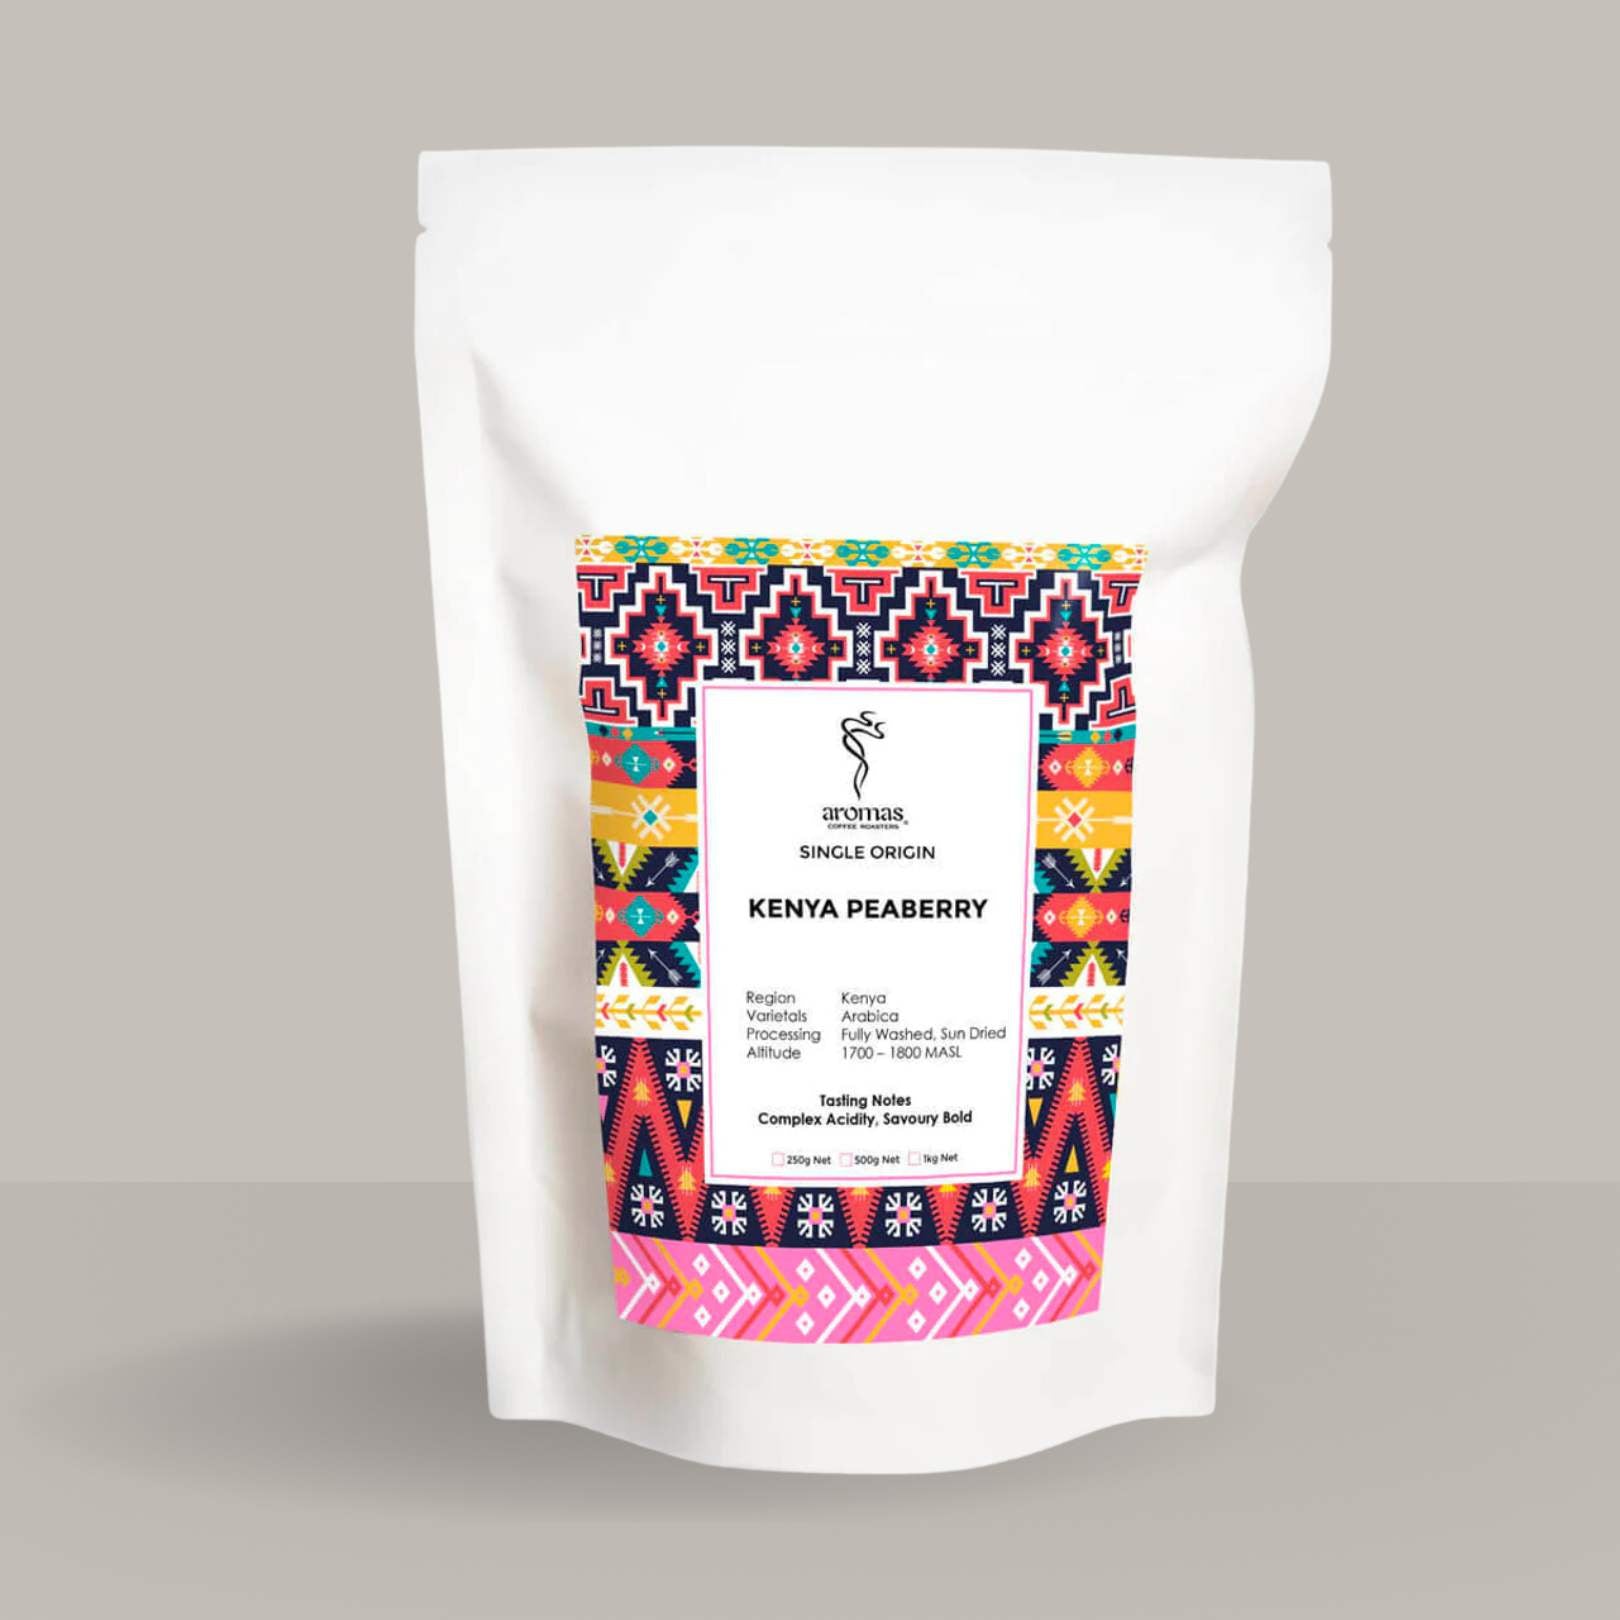 Kenya Peaberry Coffee Helping Indigenous Communities